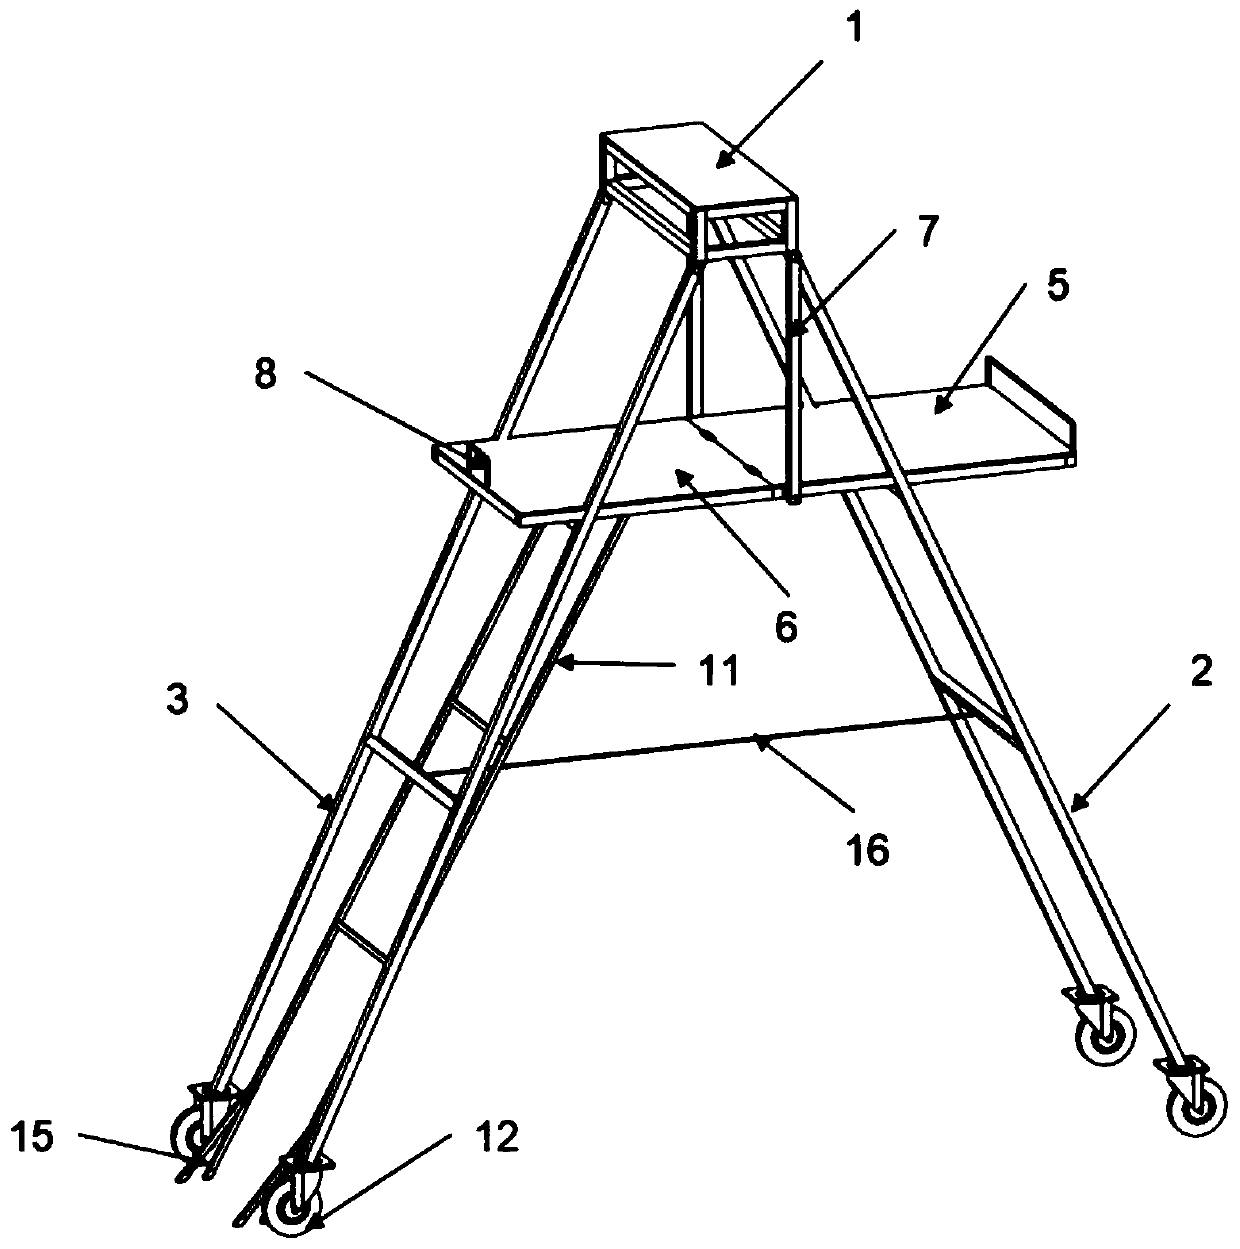 Self-movable herringbone ladder